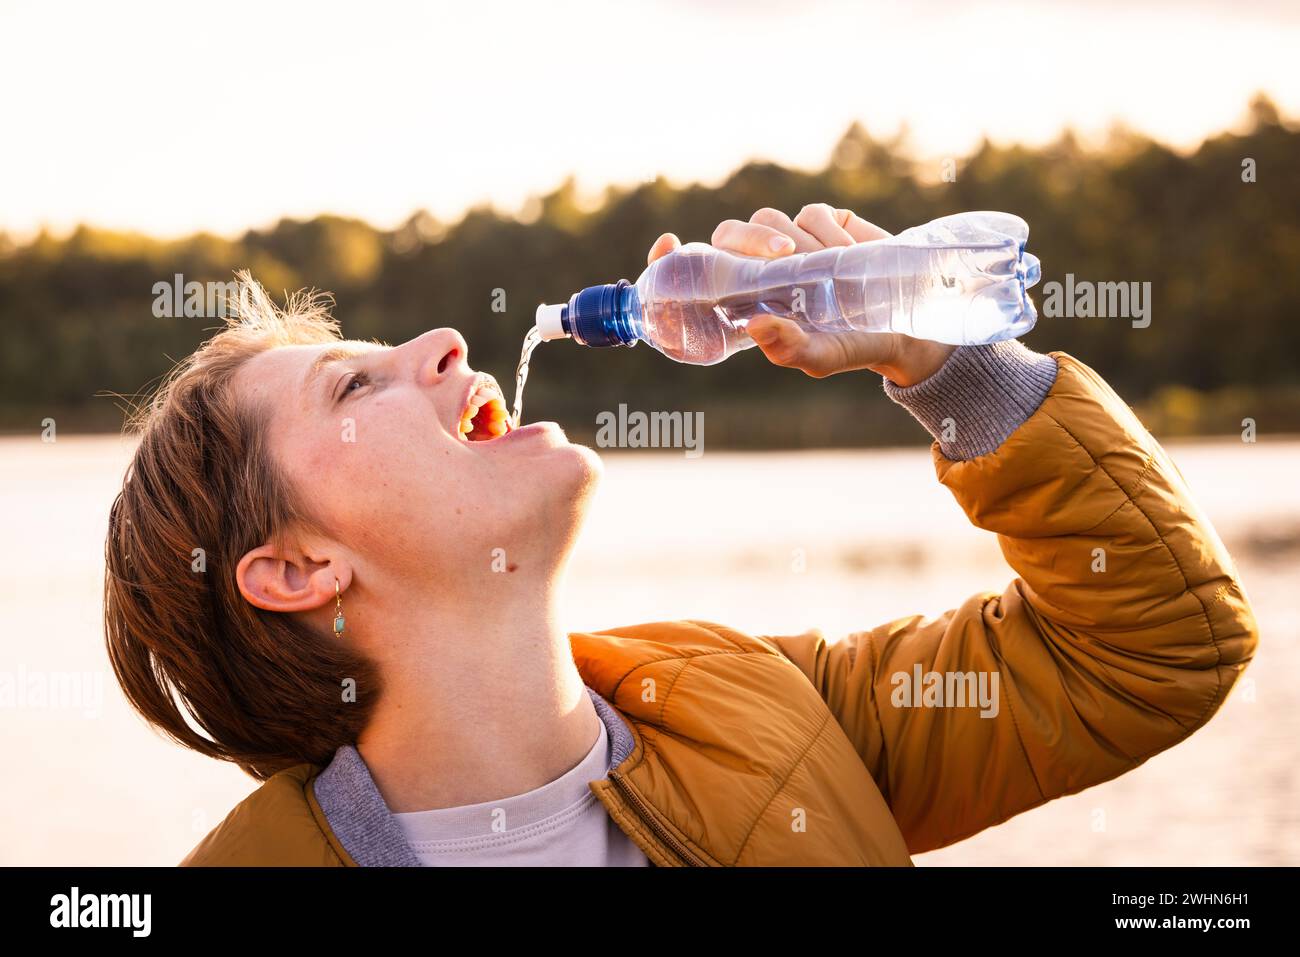 Momento rinfrescante: Giovane ragazza caucasica assaporando l'acqua all'aperto Foto Stock